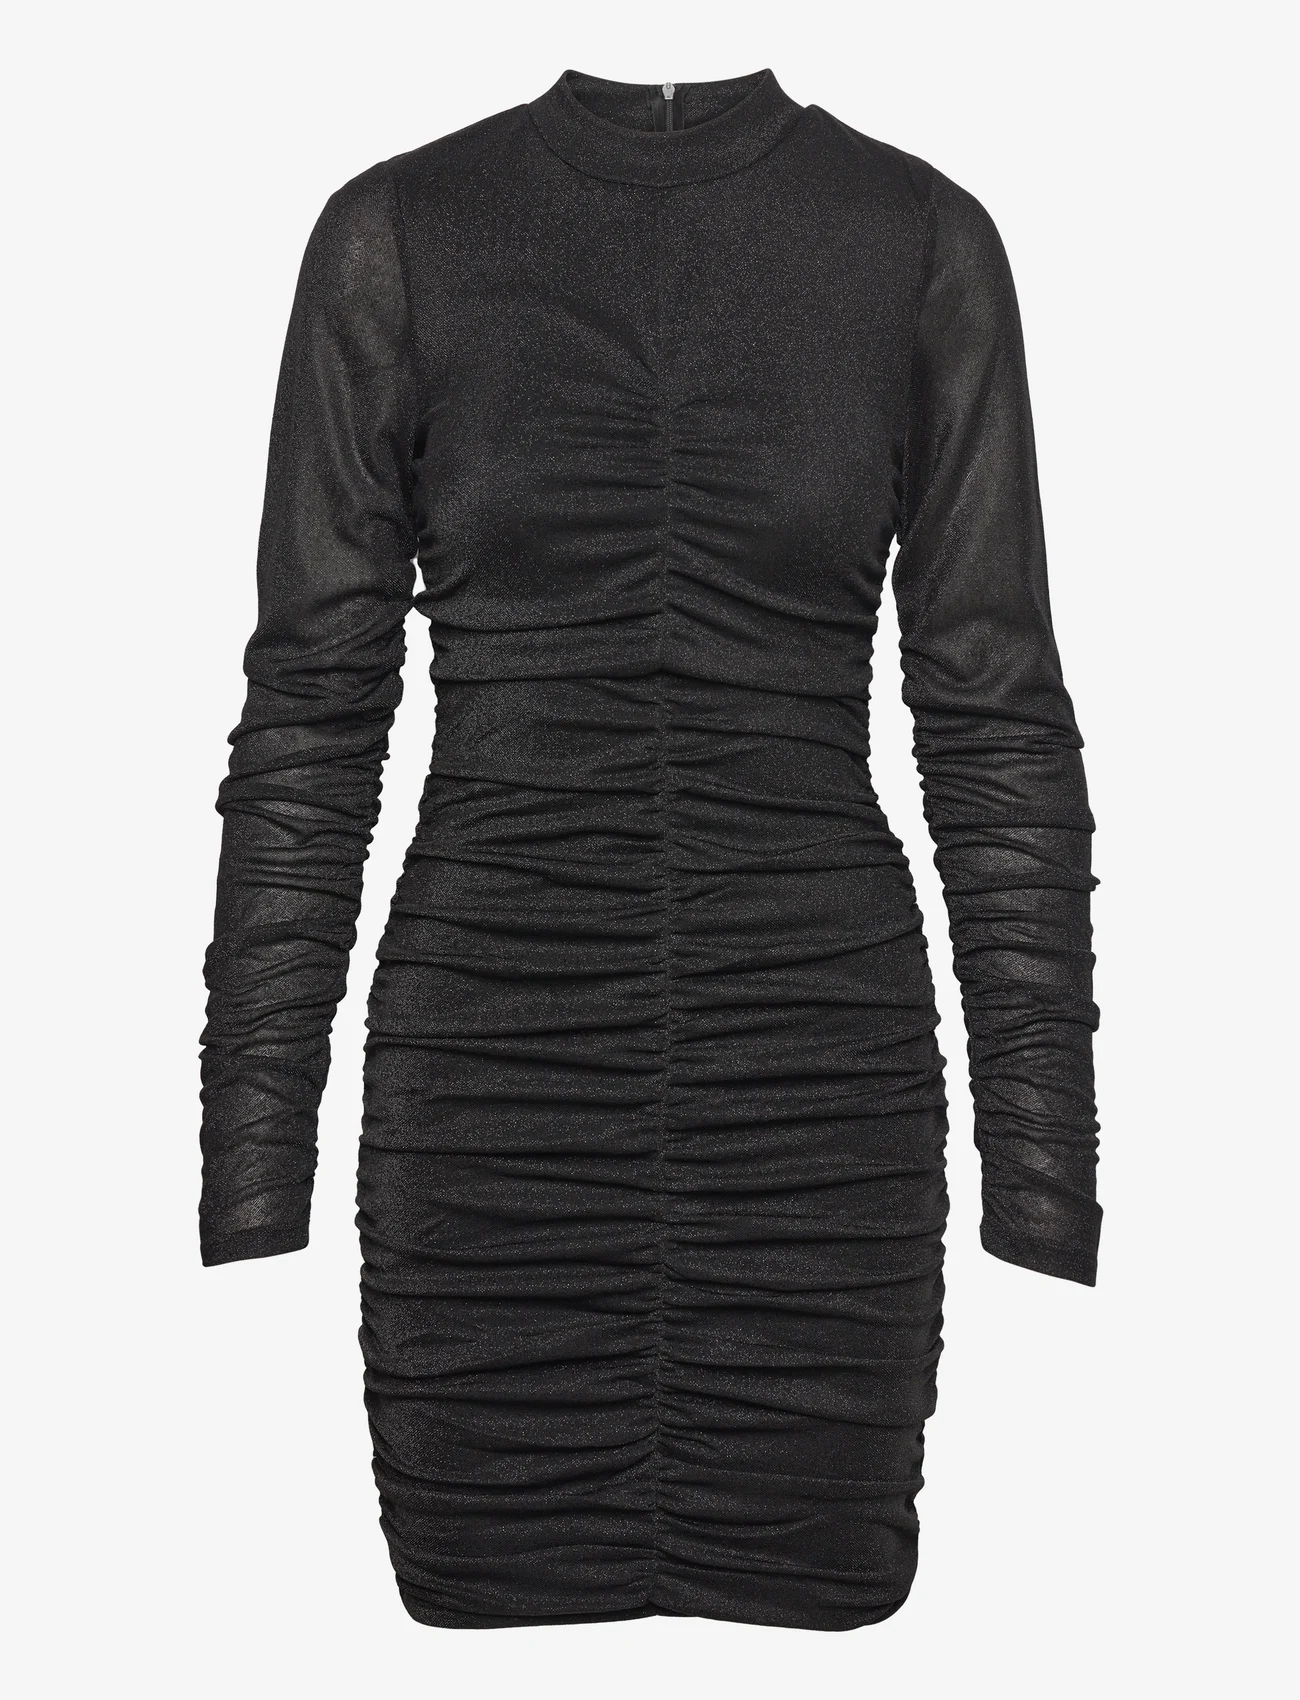 Vila - VIDAFNI L/S GLITTER MESH DRESS - laagste prijzen - black - 0